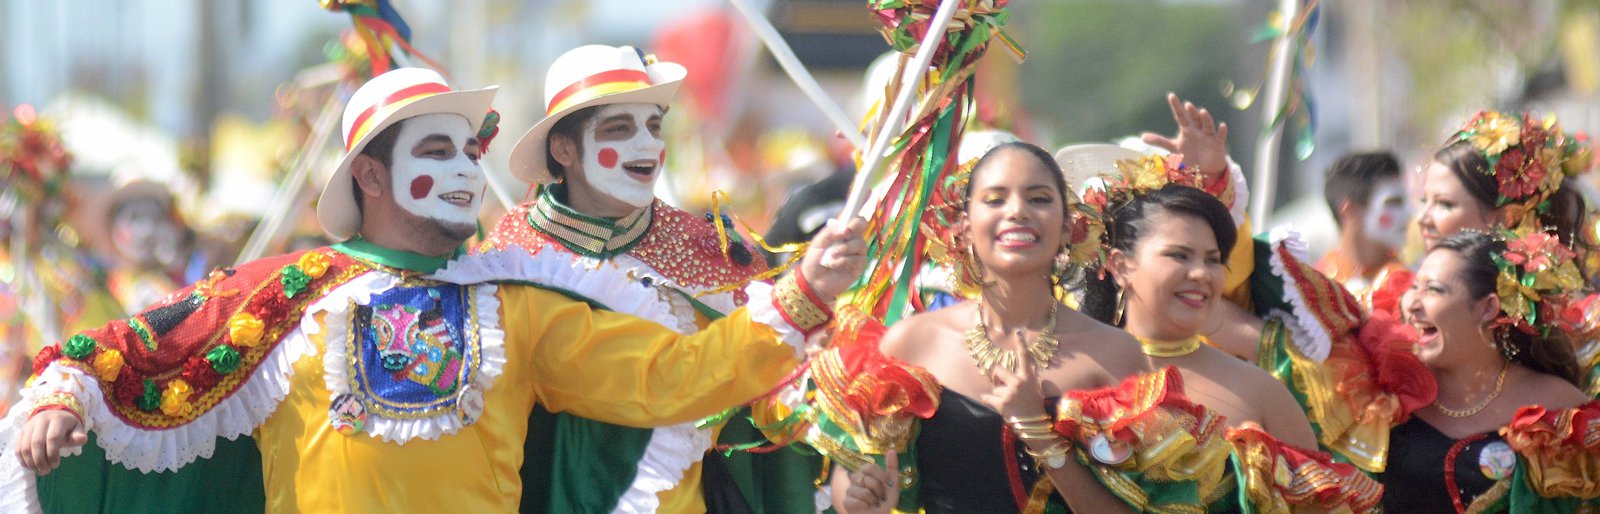 O Carnaval de Barranquilla foi declarado pela Unesco Patrimnio Cultural da Humanidade em 2003